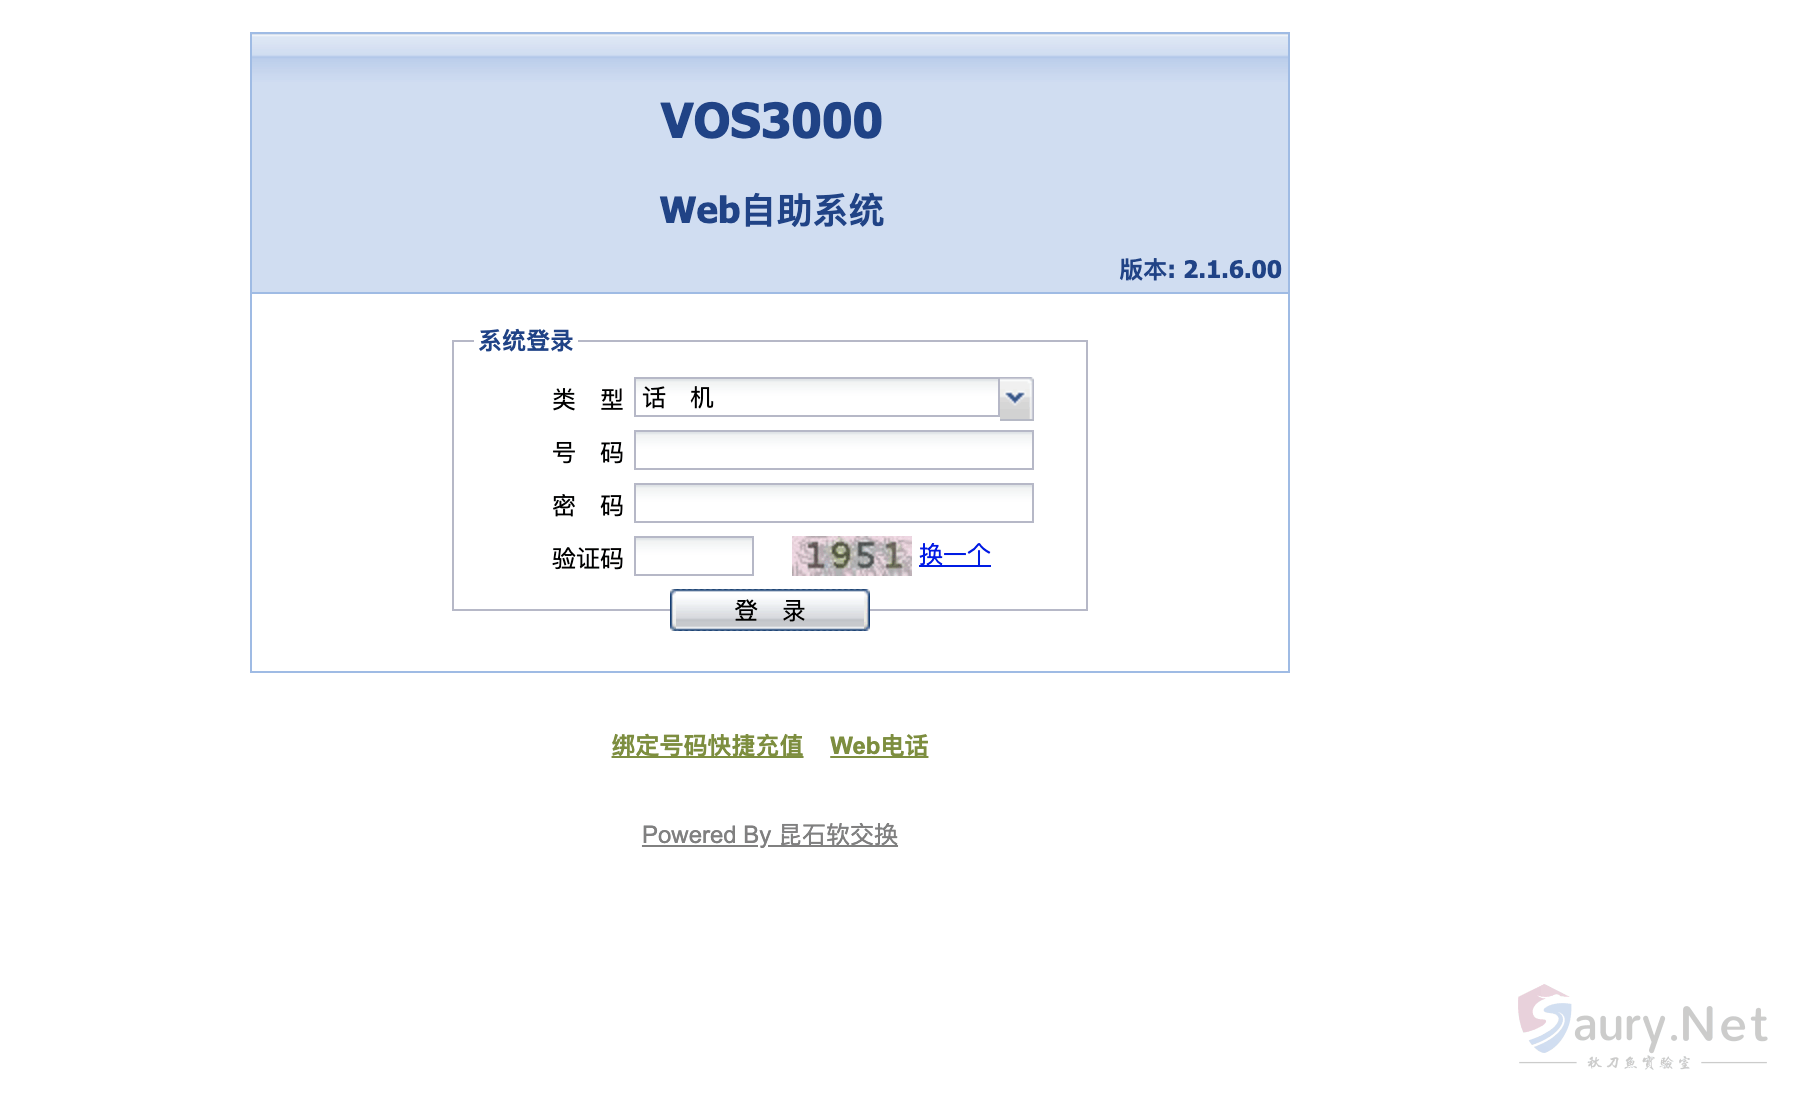 昆石网络 VOS3000虚拟运营支撑系统任意文件读取漏洞-秋刀鱼实验室